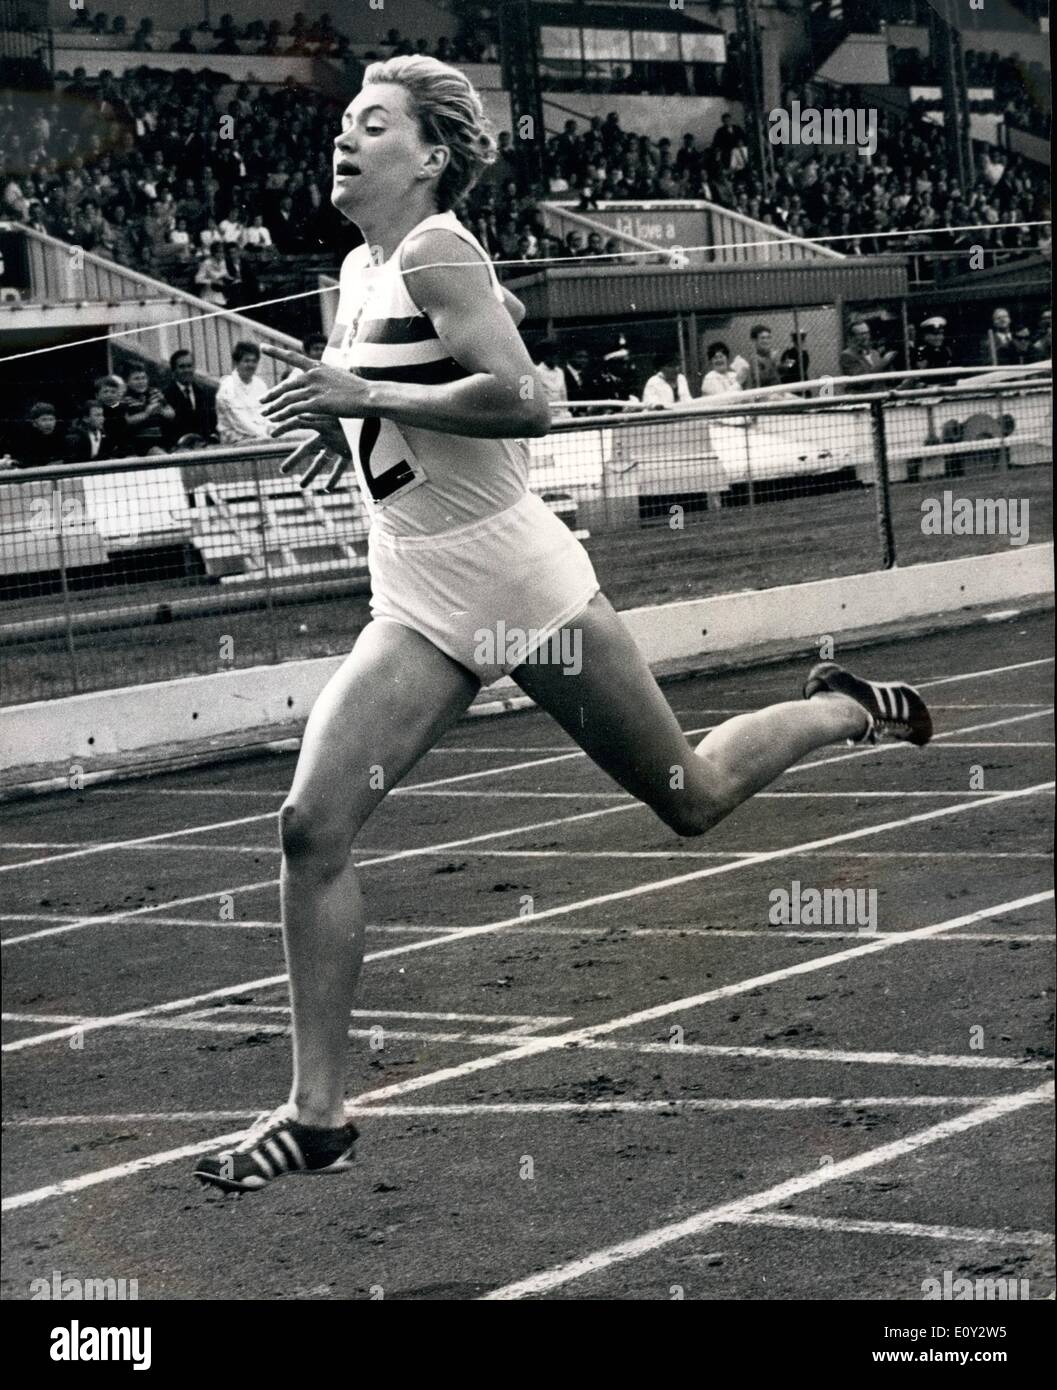 Septembre 09, 1968 - Athlétisme à White City. La Grande-Bretagne et la Pologne. La photo montre Lillian Board, vu gagner le 400 mètres en 53 secondes - au cours de la réunion internationale d'athlétisme entre la Grande Bretagne et la Pologne, au White City Stadium, Londres hier. Banque D'Images